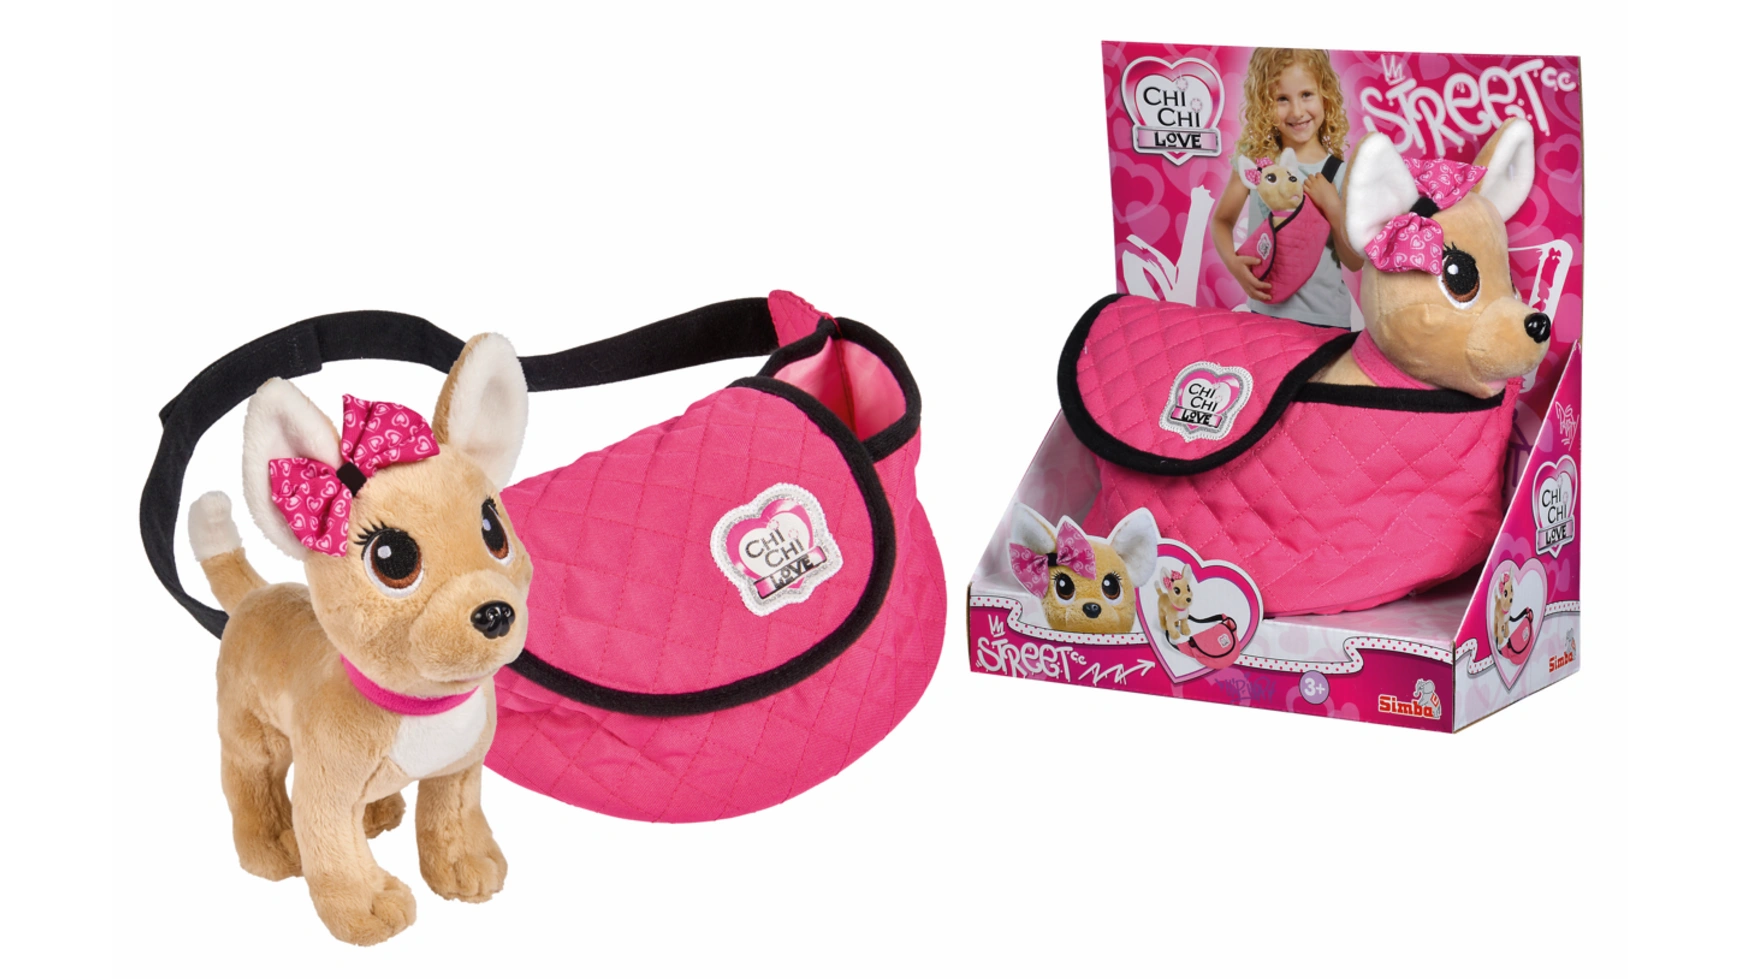 Chi chi love плюшевая собака ccl street chihuahua в модной поясной сумке регулируемый ремень Simba